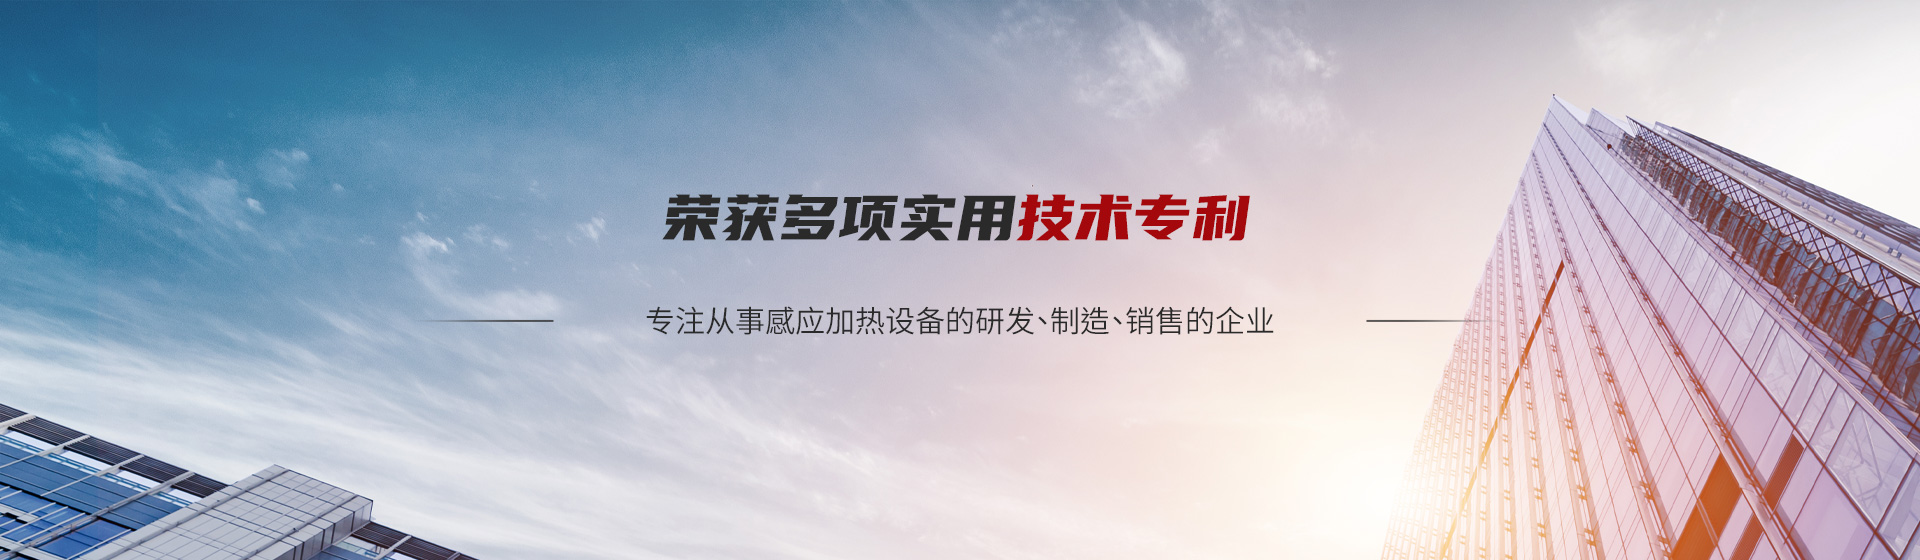 威九国际丨中国有限公司官网